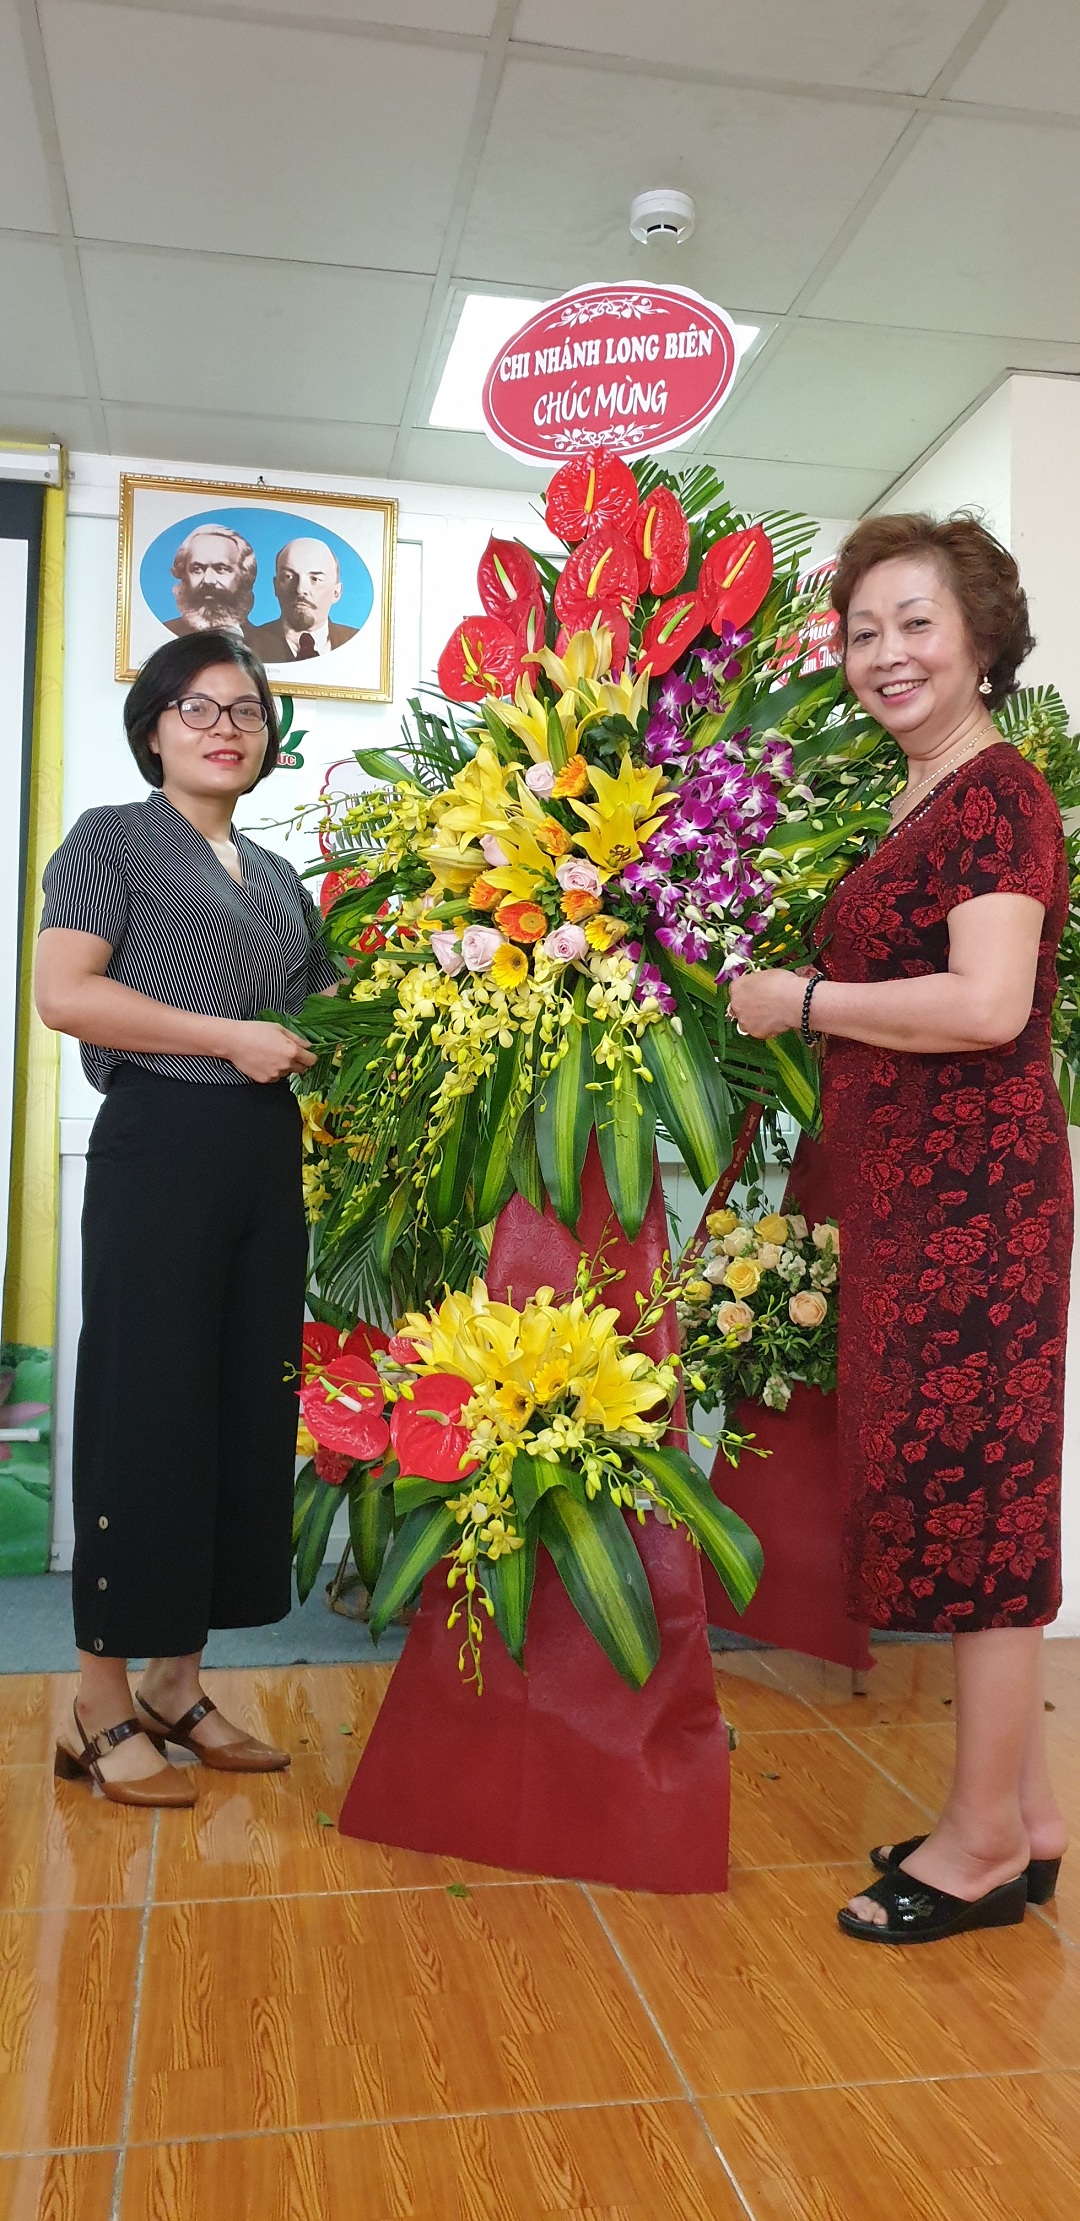 Đại diện chi nhánh Long Biên tặng hoa